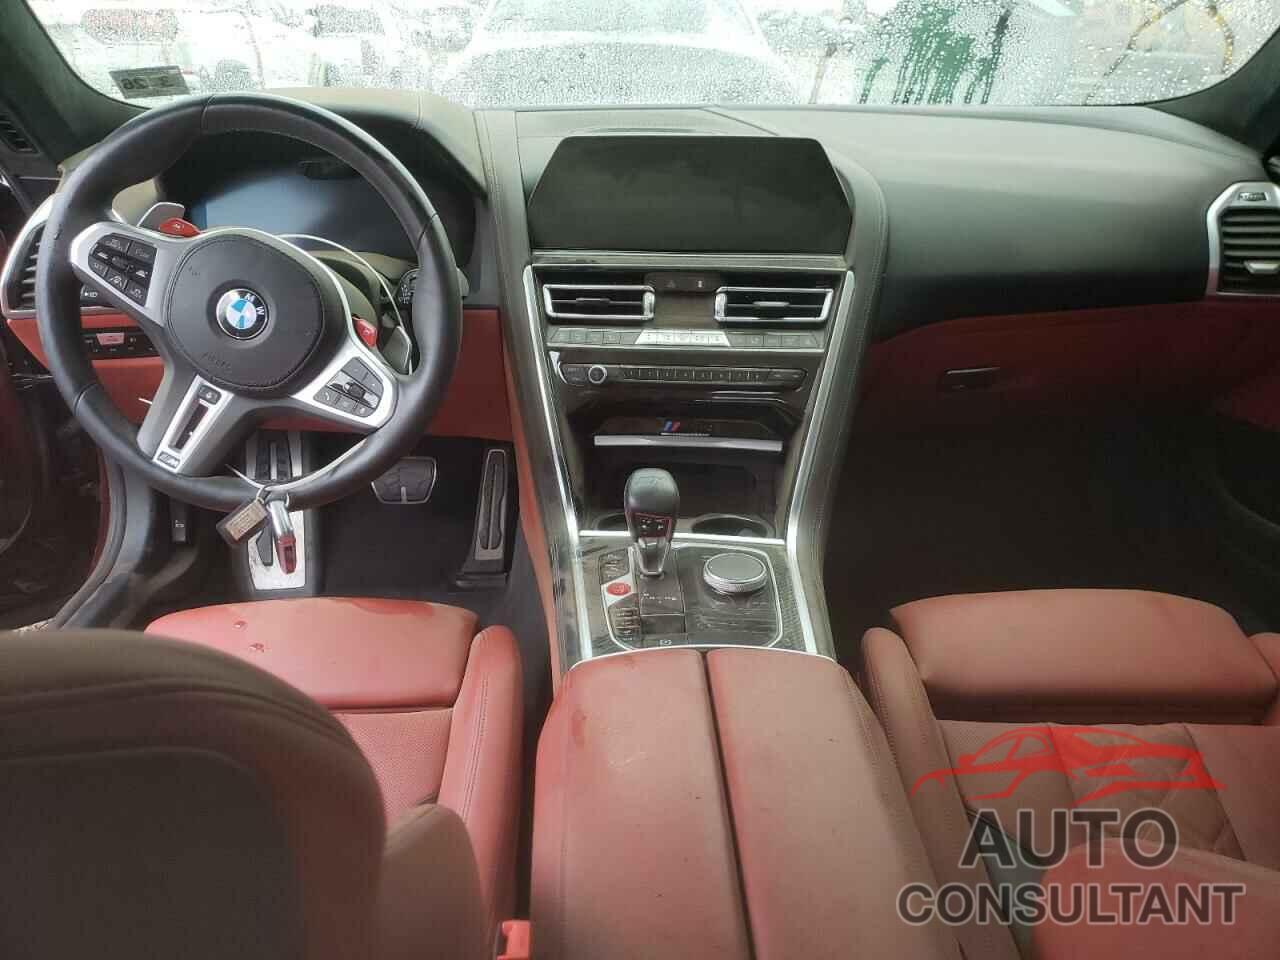 BMW M8 2021 - WBSGV0C03MCF60039